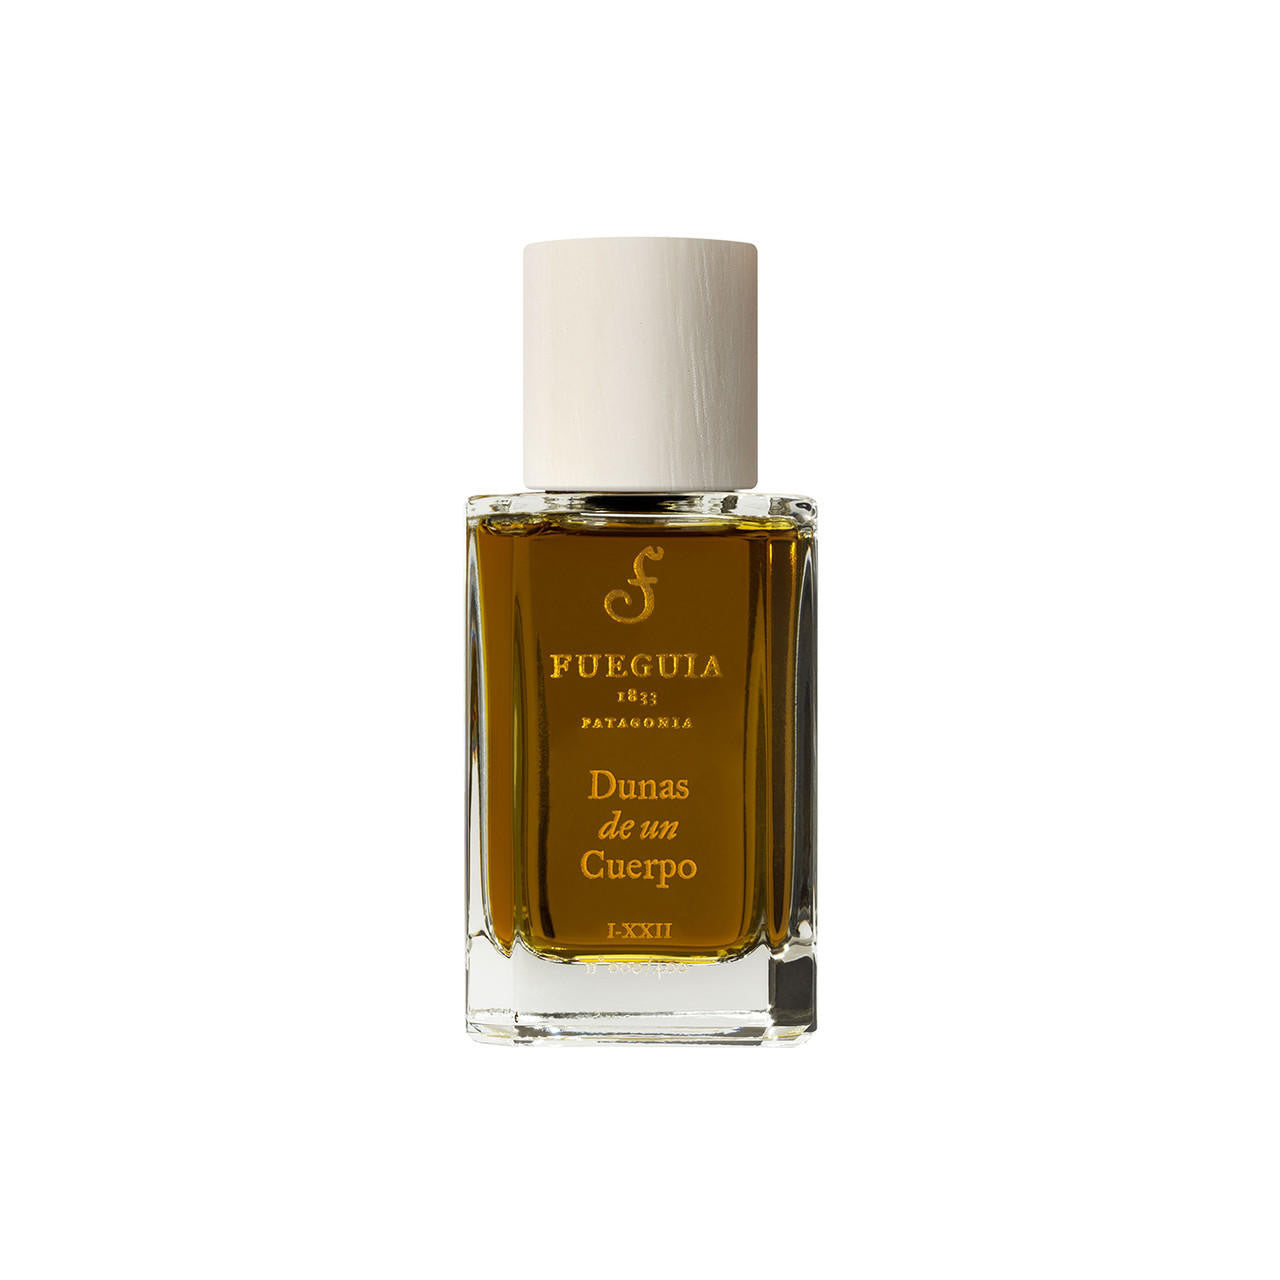 Fueguia 1833 Dunas de un Cuerpo Eau de Parfum | ZGO Perfumery